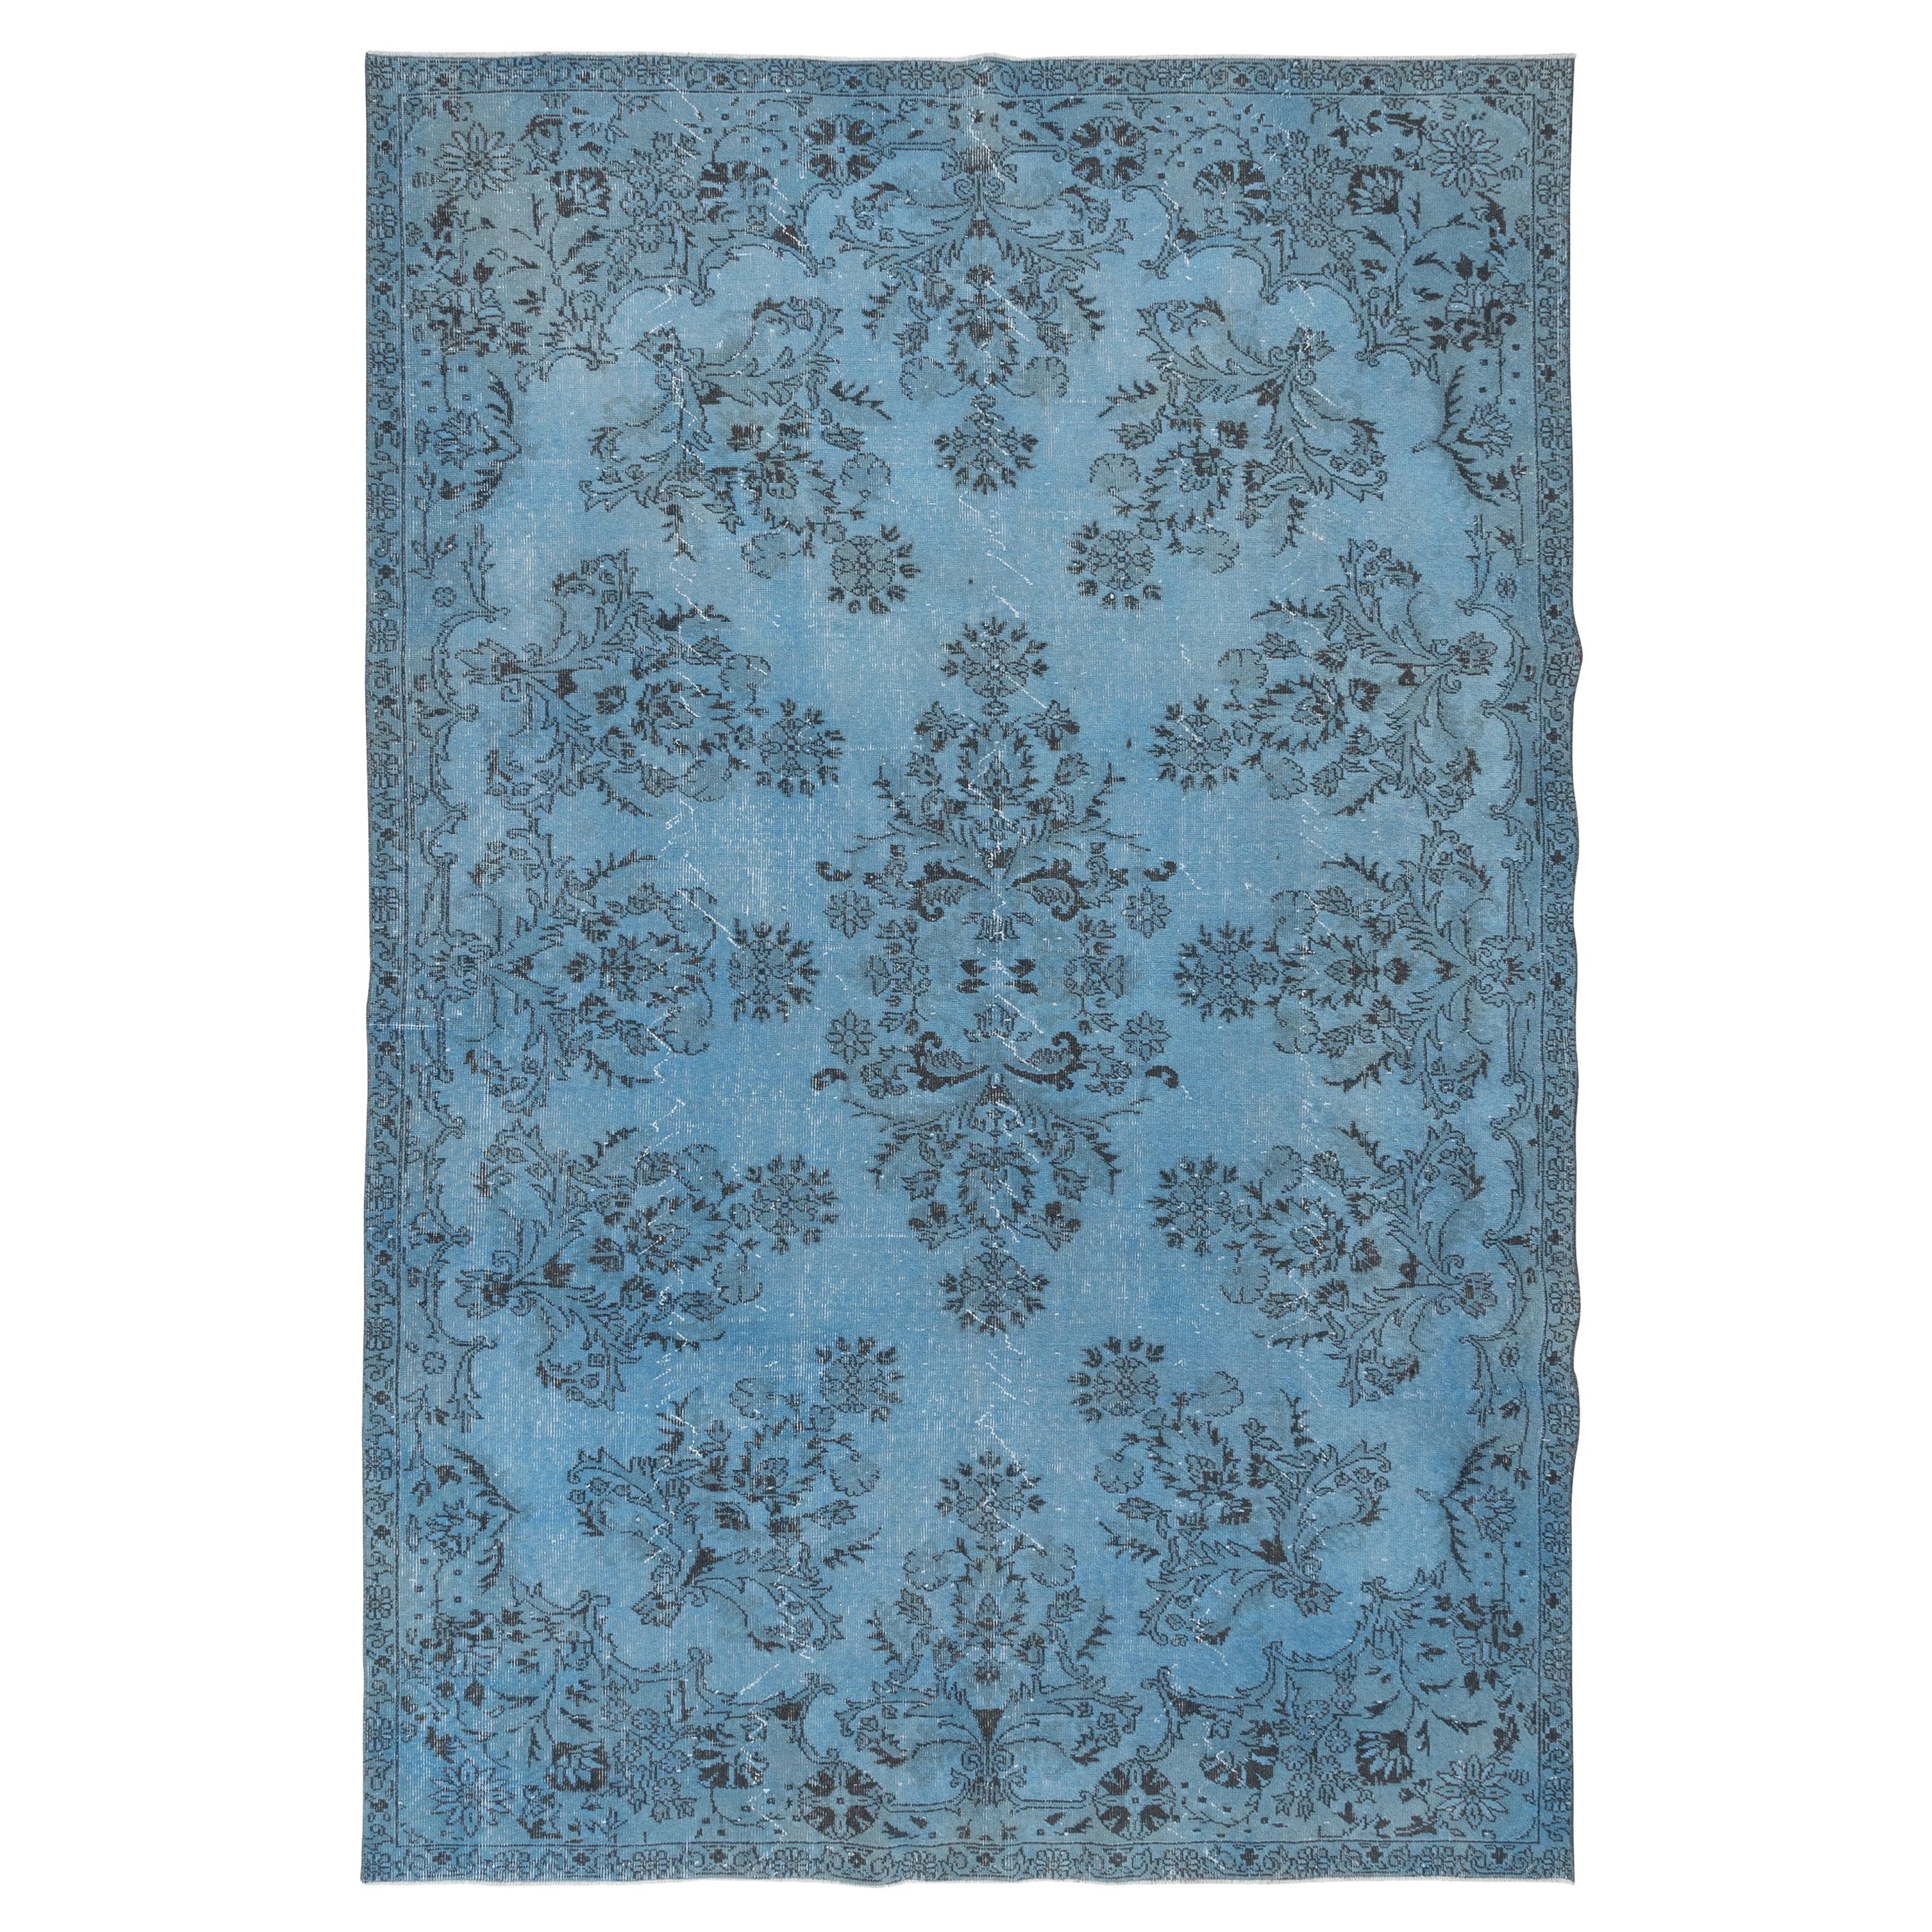 7x10.6 Ft Light Blue Modern Area Rug, Handmade Turkish Wool Living Room Carpet (tapis de salon en laine turque fait à la main)